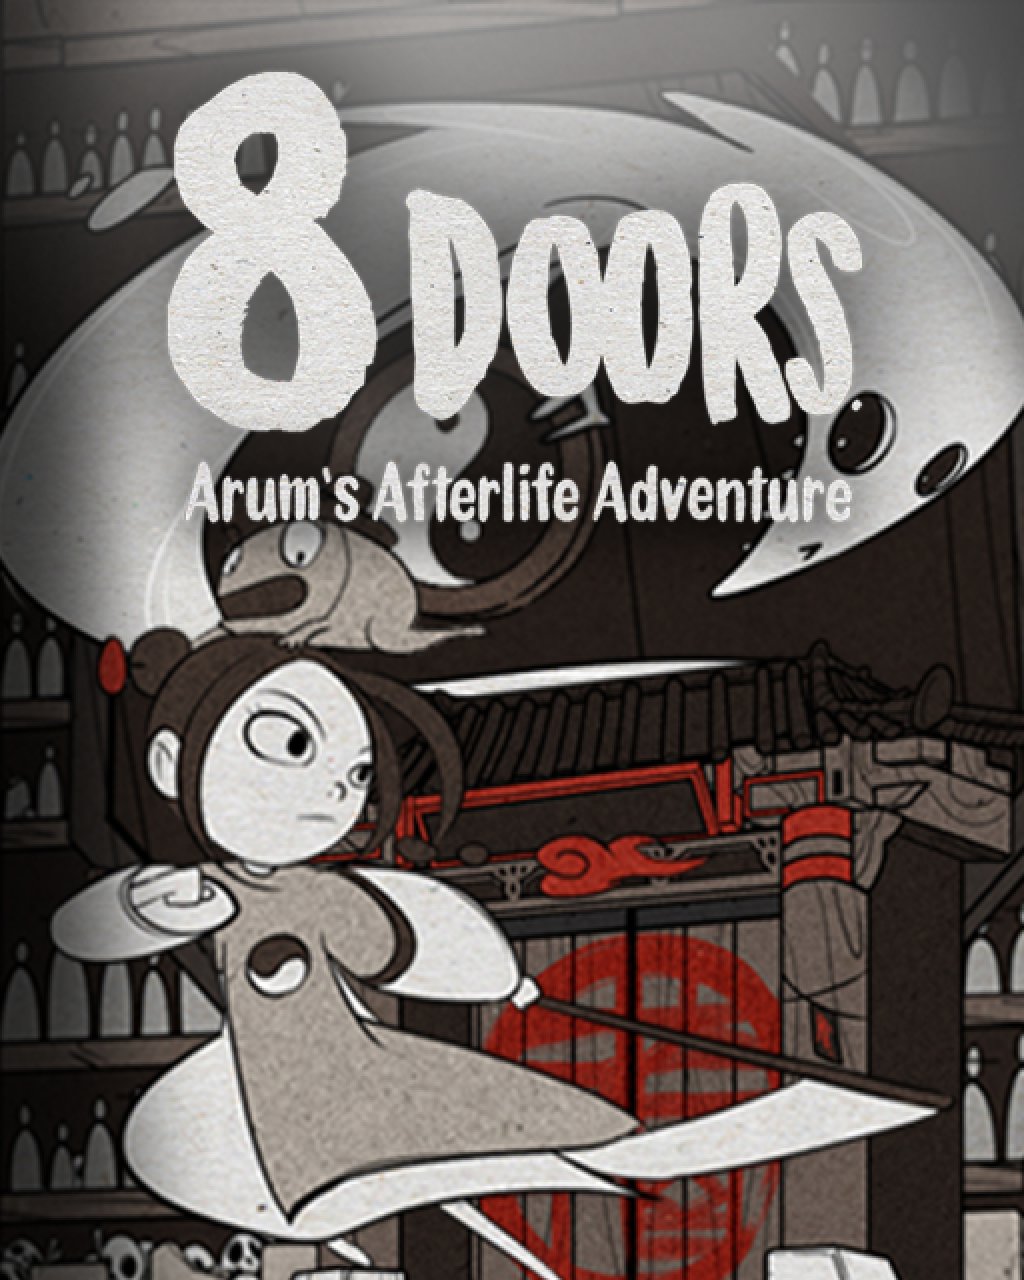 8Doors Arum's Afterlife Adventure